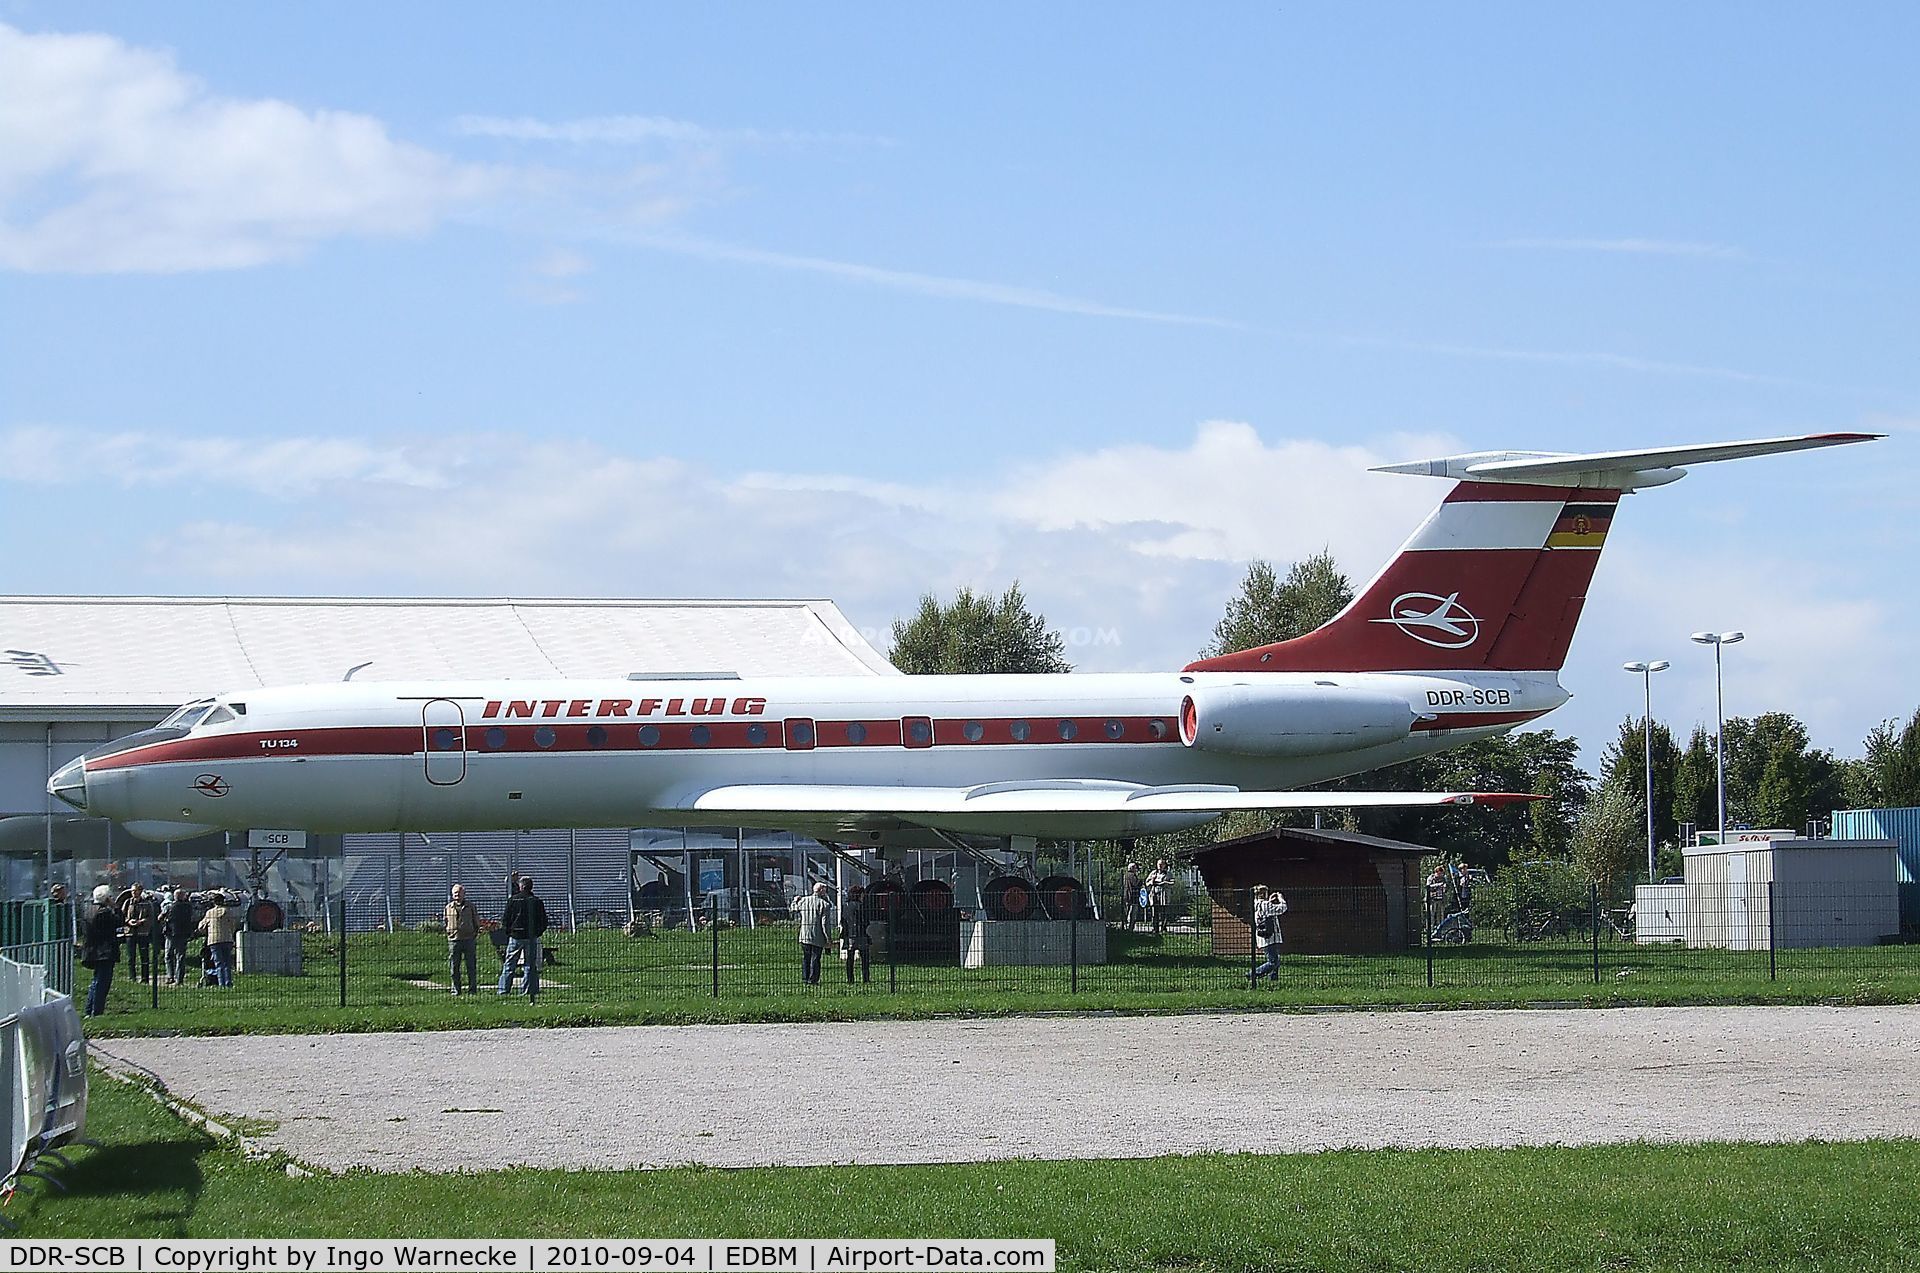 DDR-SCB, 1968 Tupolev Tu-134 C/N 8350503, Tupolev Tu-134 CRUSTY preserved at Magdeburg airfield